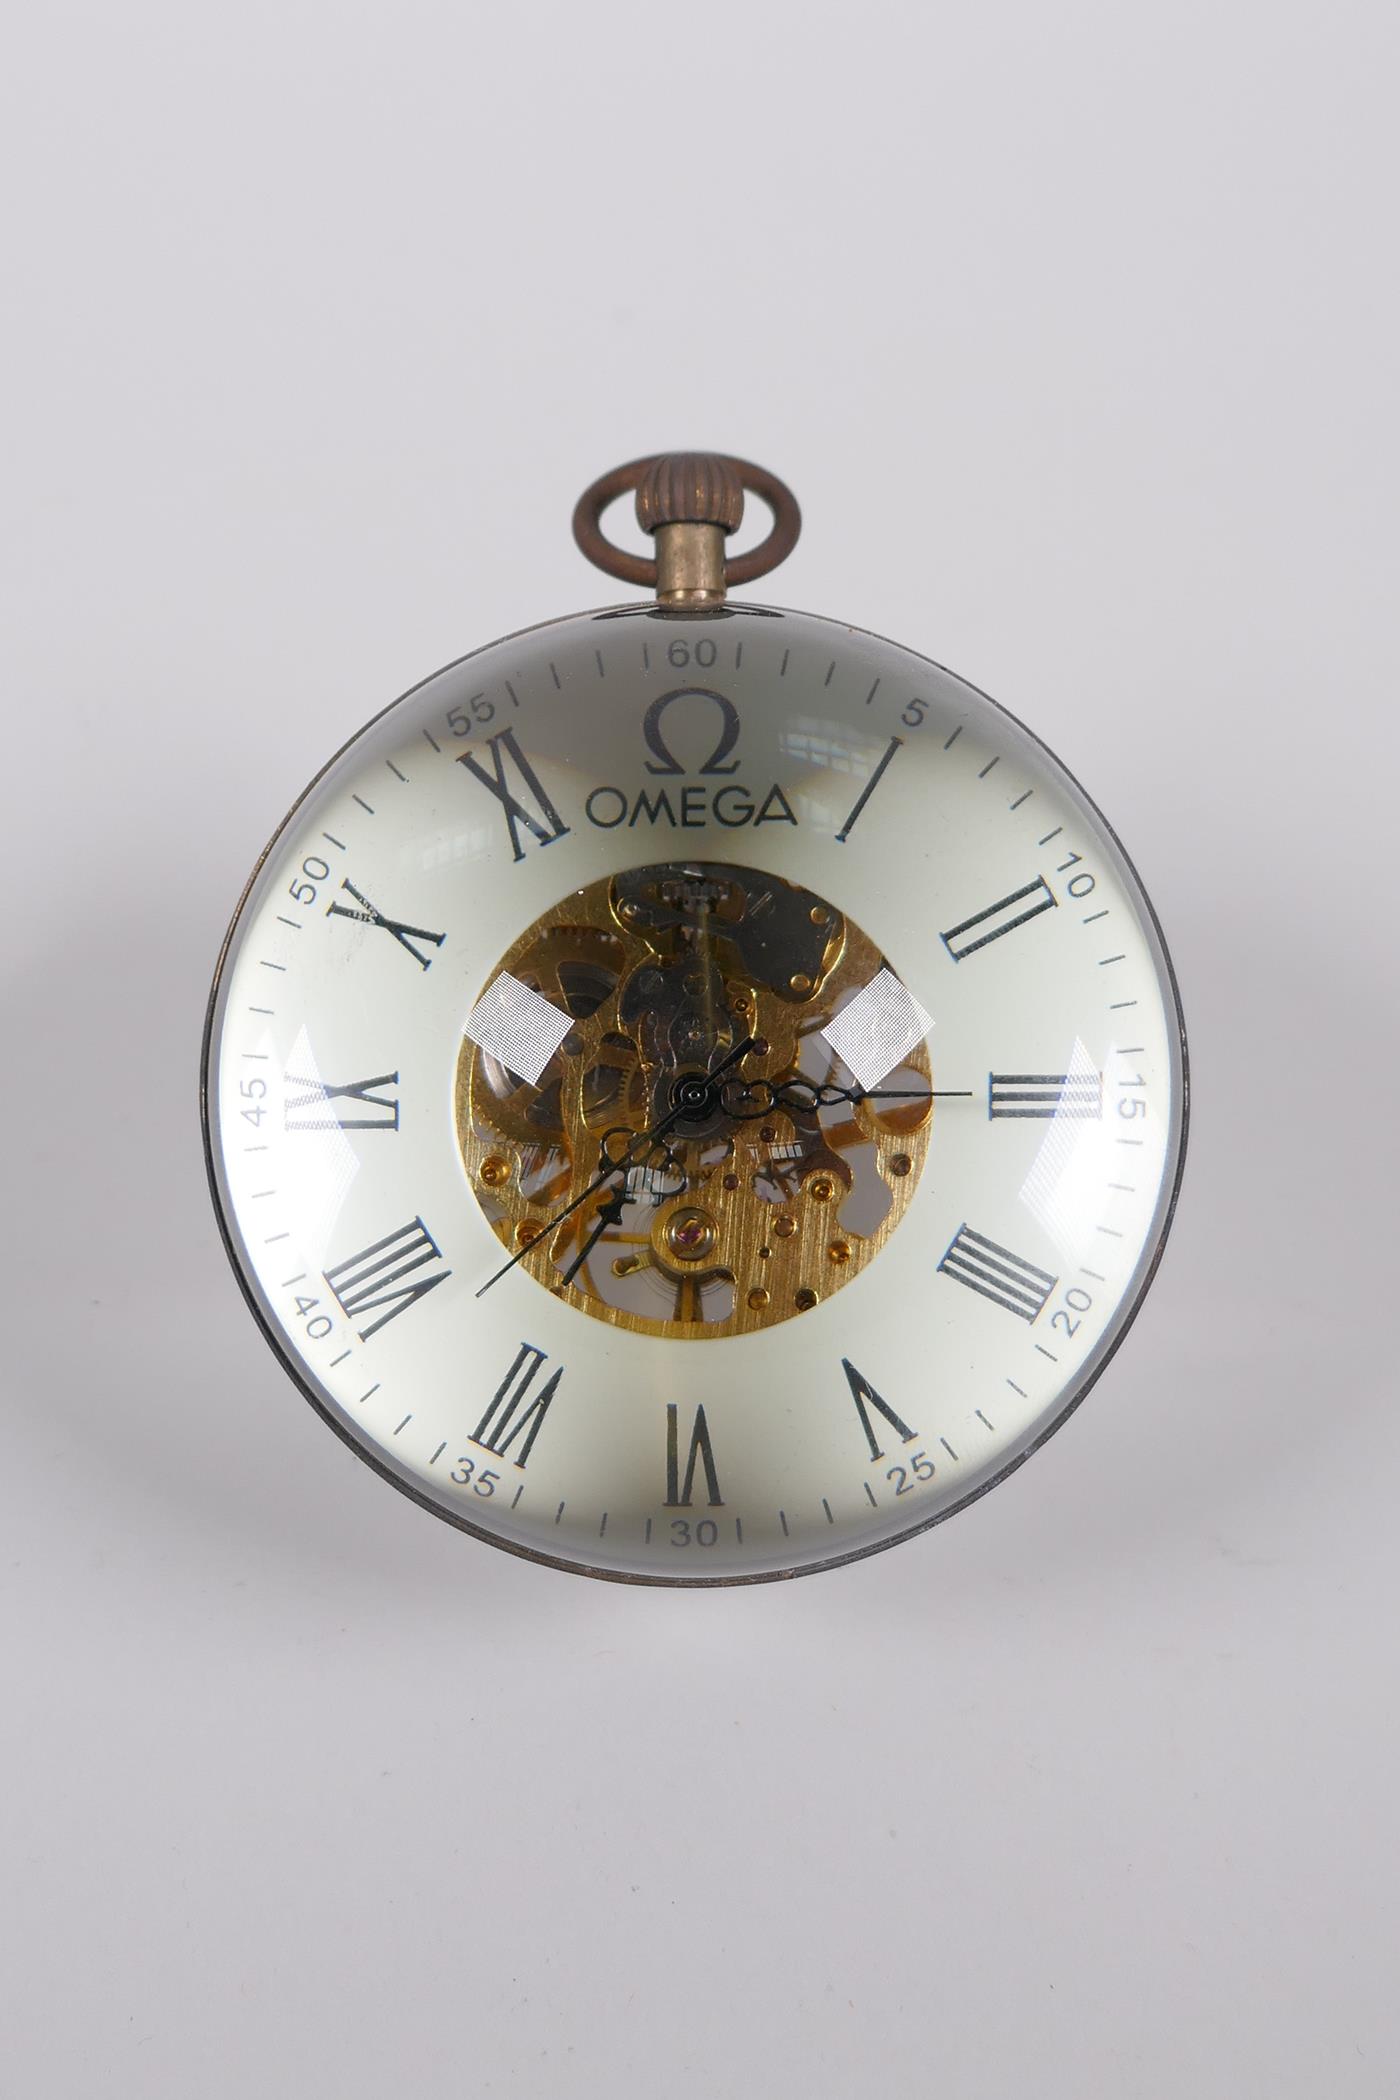 A glass ball desk clock with brass mounts, 3" diameter